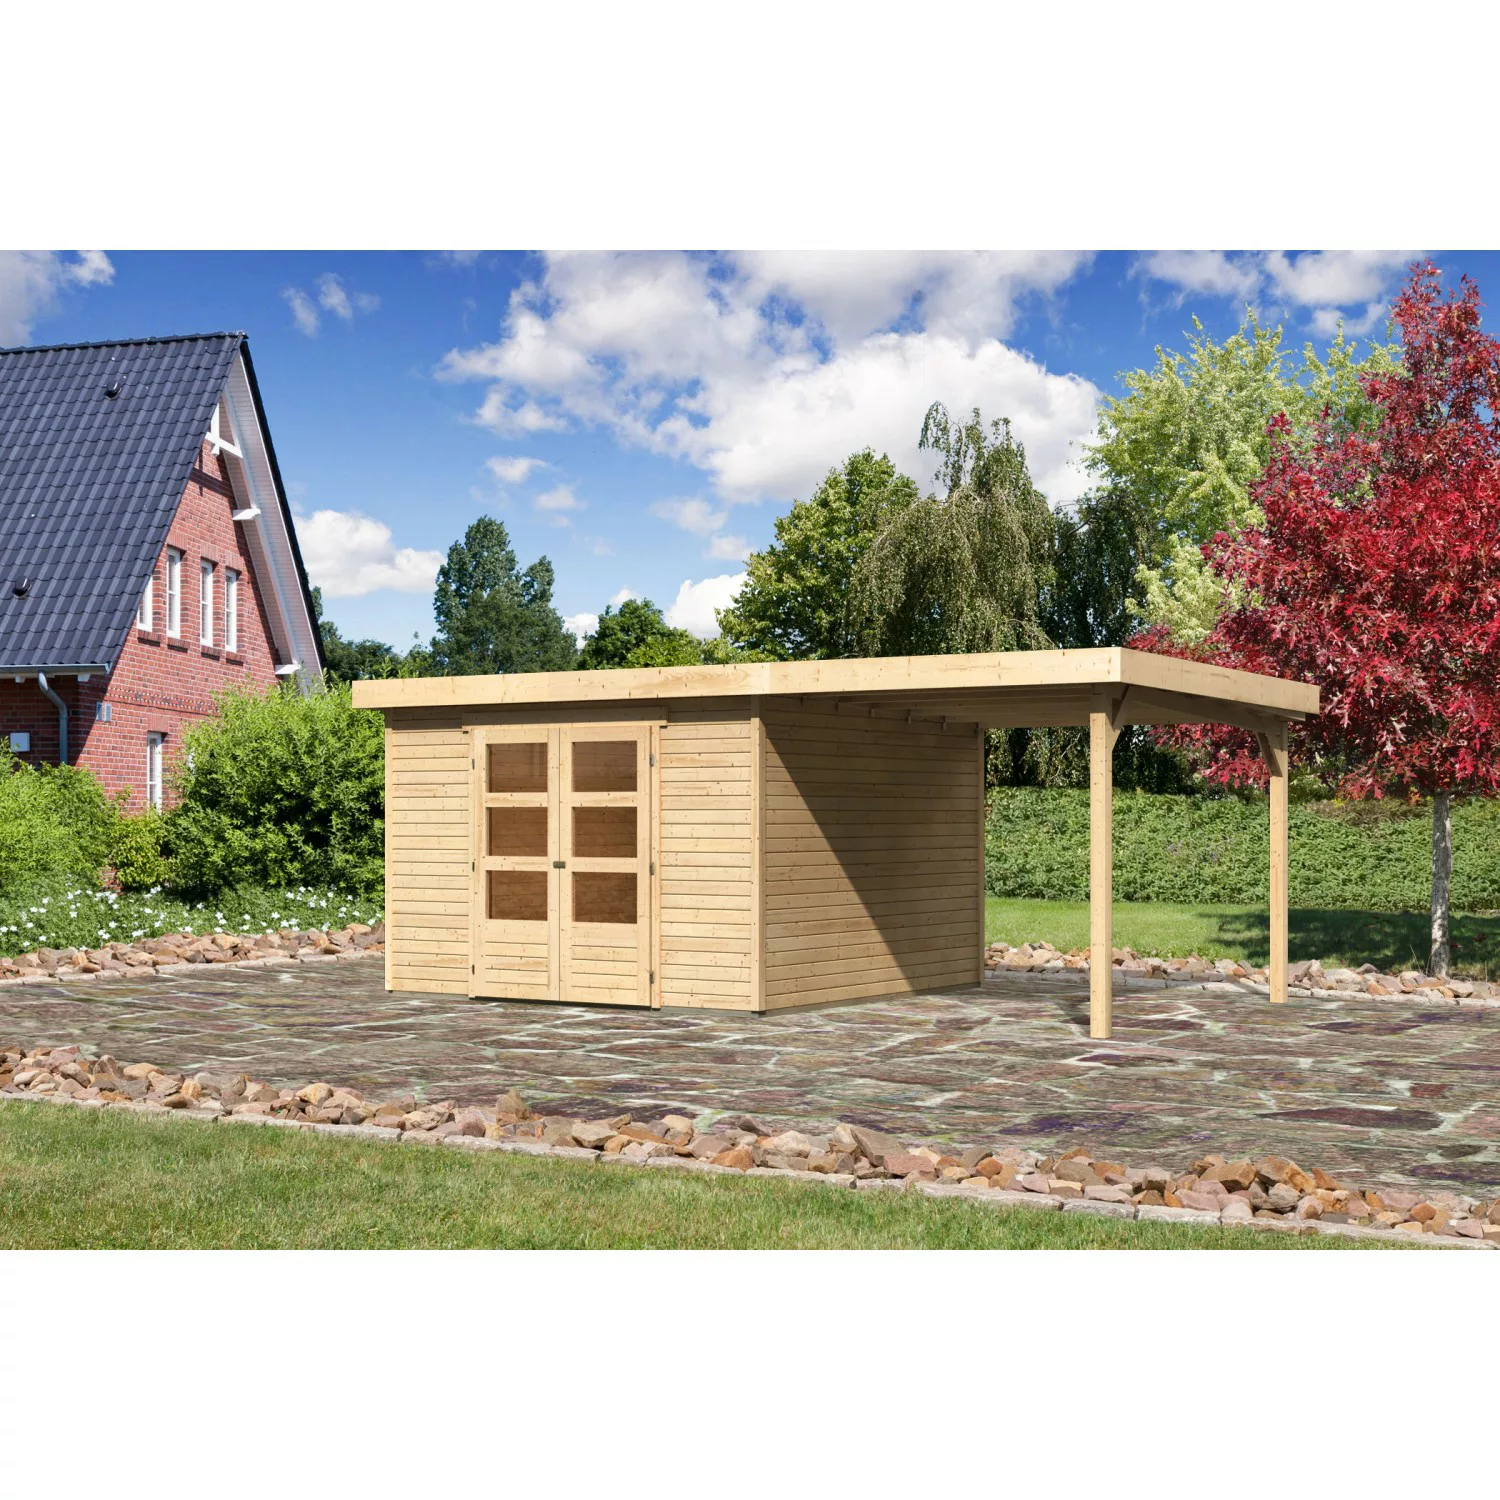 Karibu Holz-Gartenhaus Boras Flachdach Unbehandelt 298 cm x 302 cm günstig online kaufen